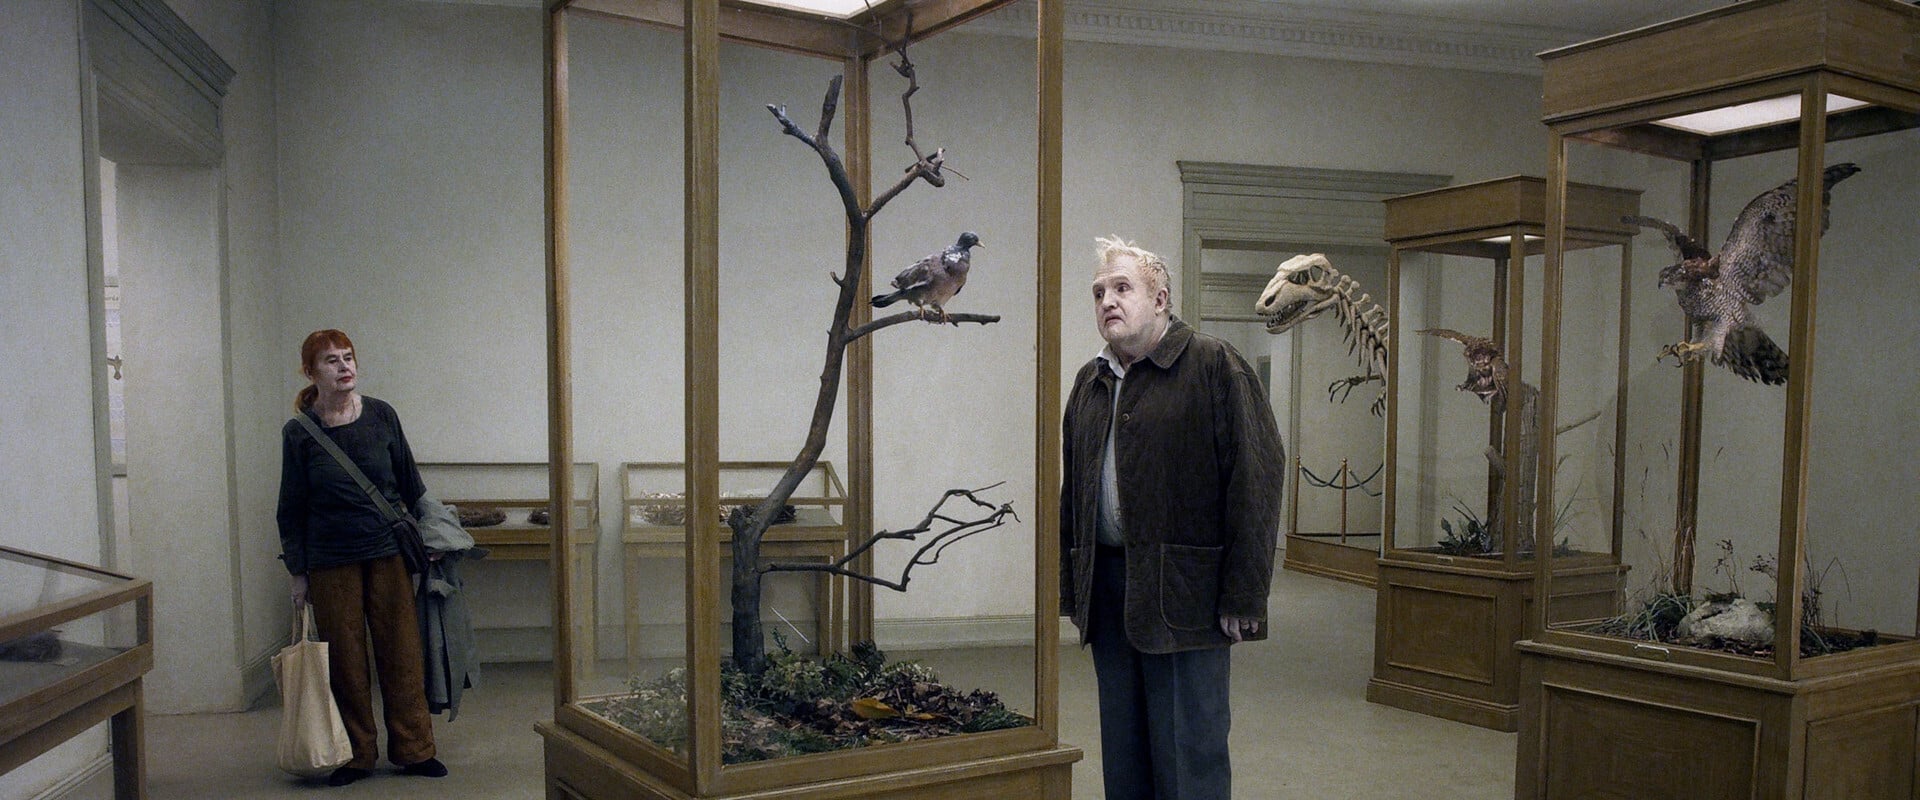 Una paloma se posó en una rama a reflexionar sobre la existencia